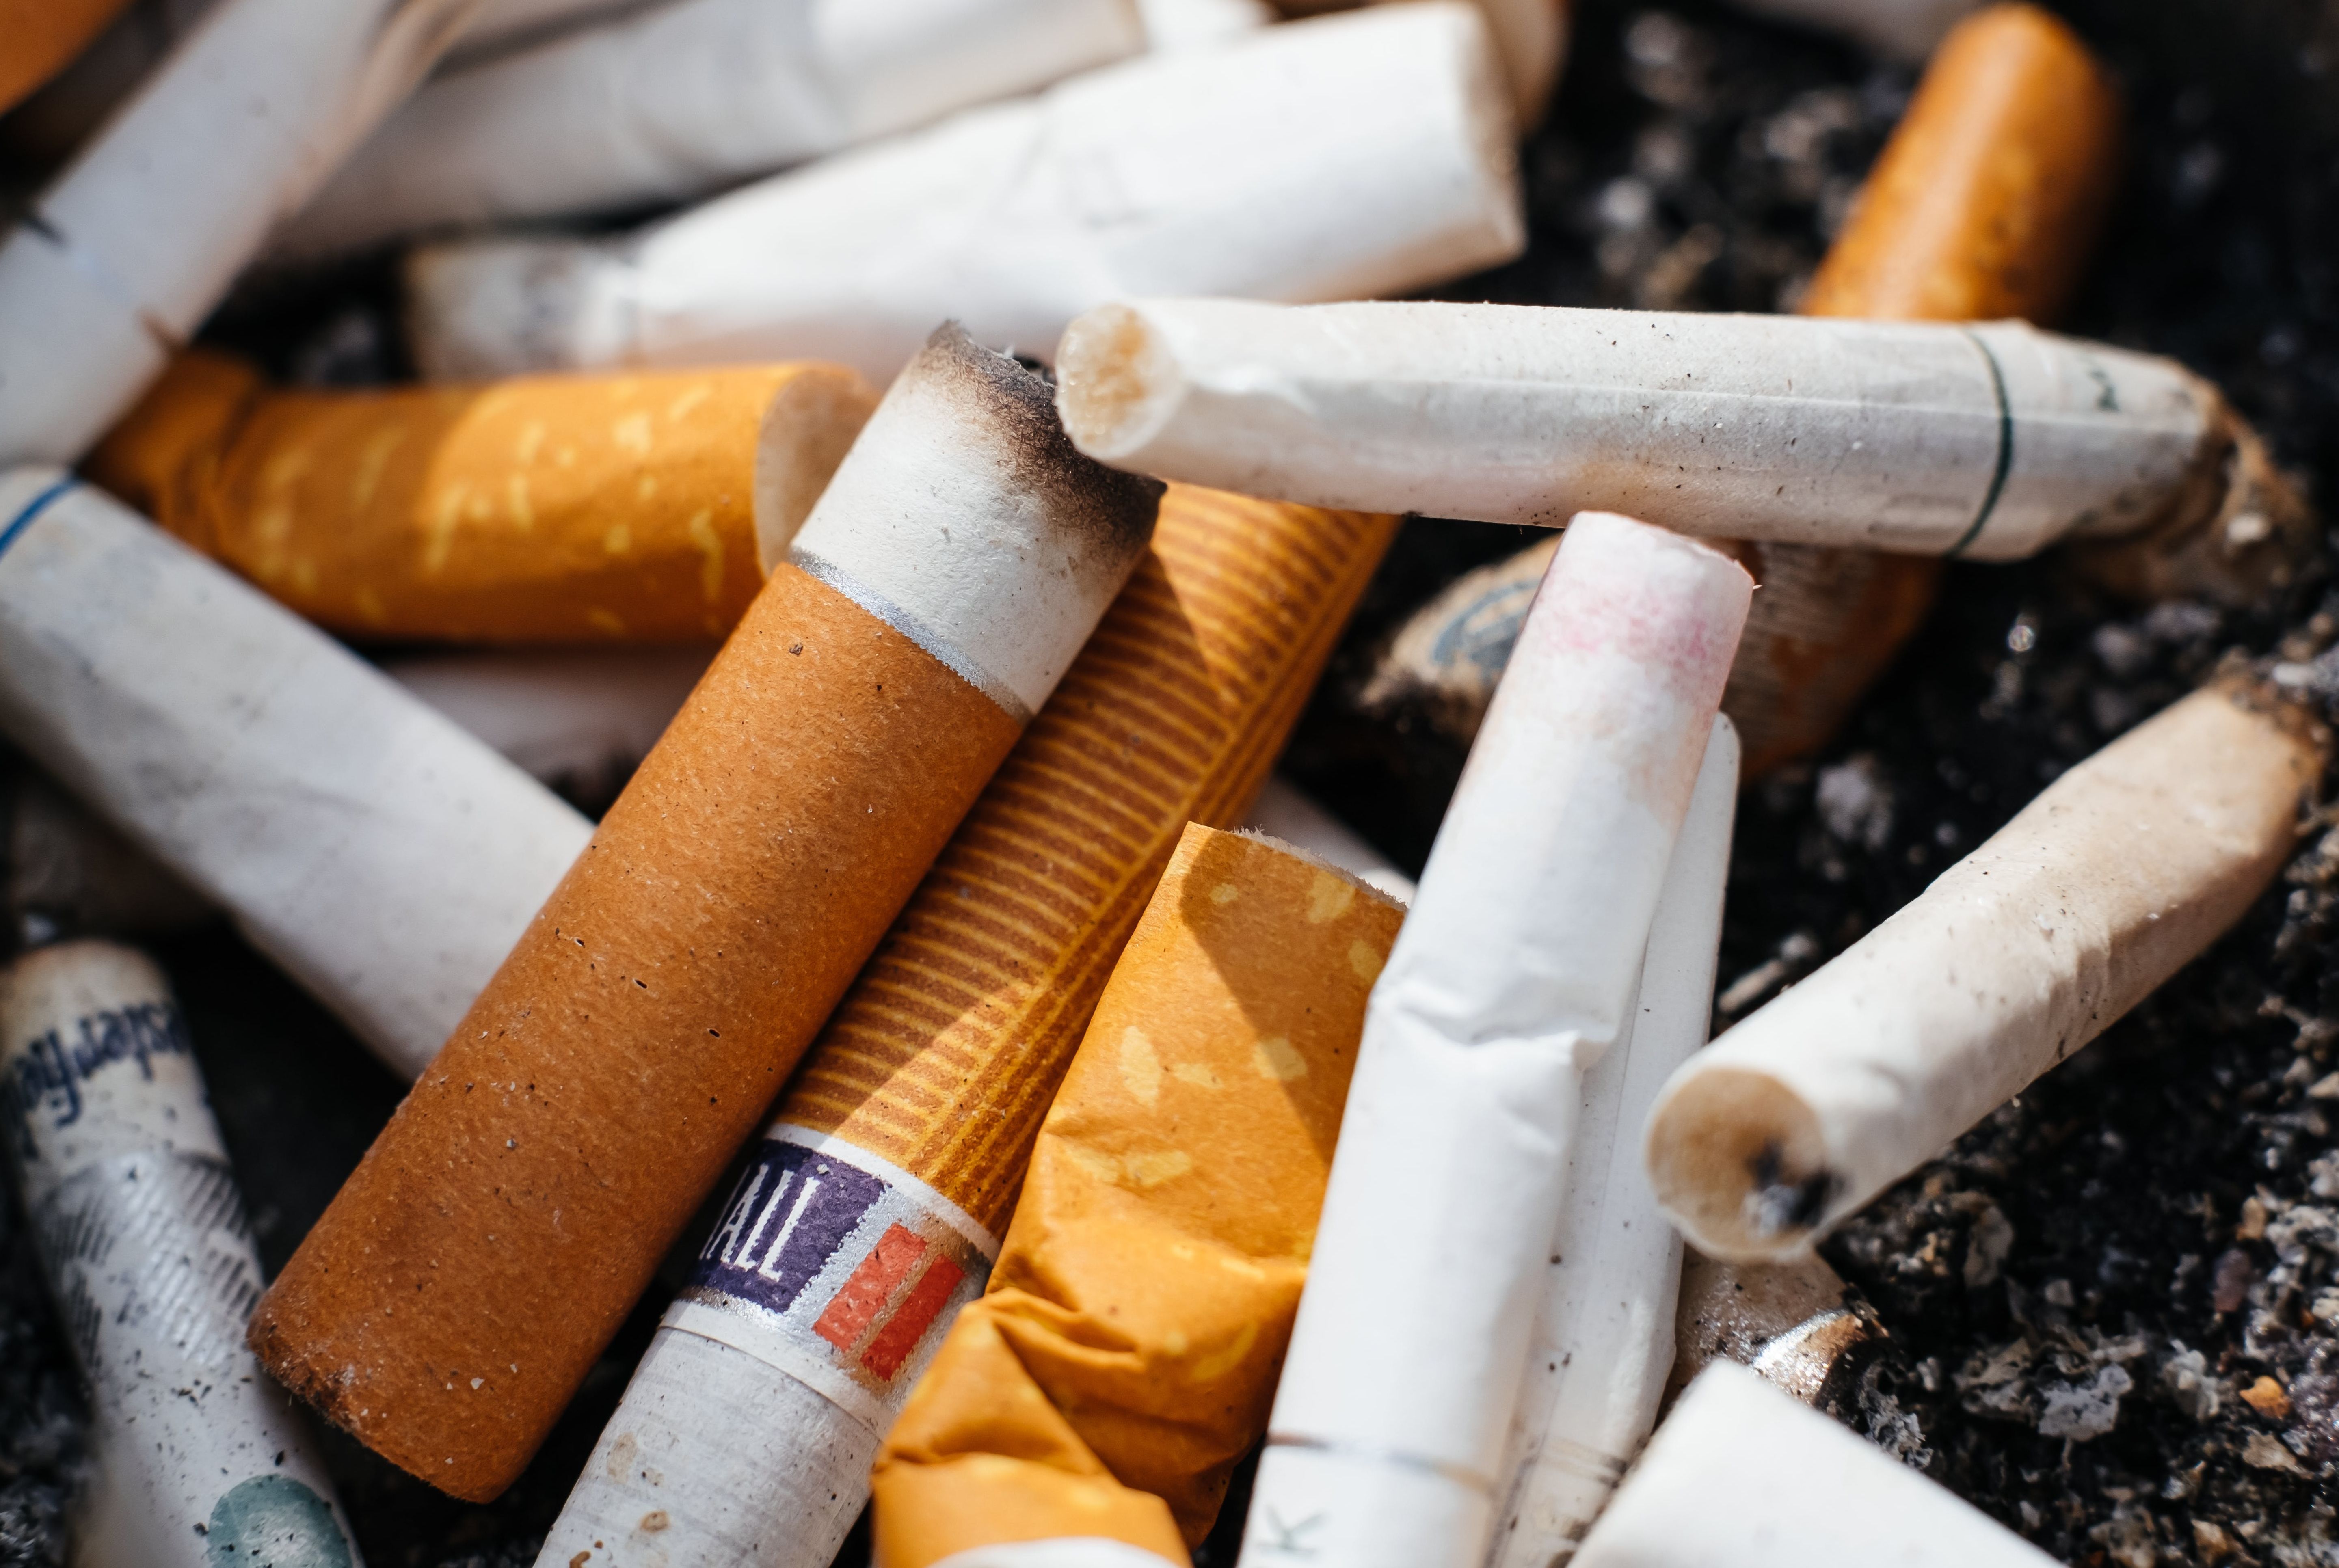  Una start-up slovacca sta cercando nuovi partner tecnologici o di ricerca per estendere la ricerca sul possibile riciclo dei rifiuti di sigarette e dei residui di tabacco dalle stick (IQOS).